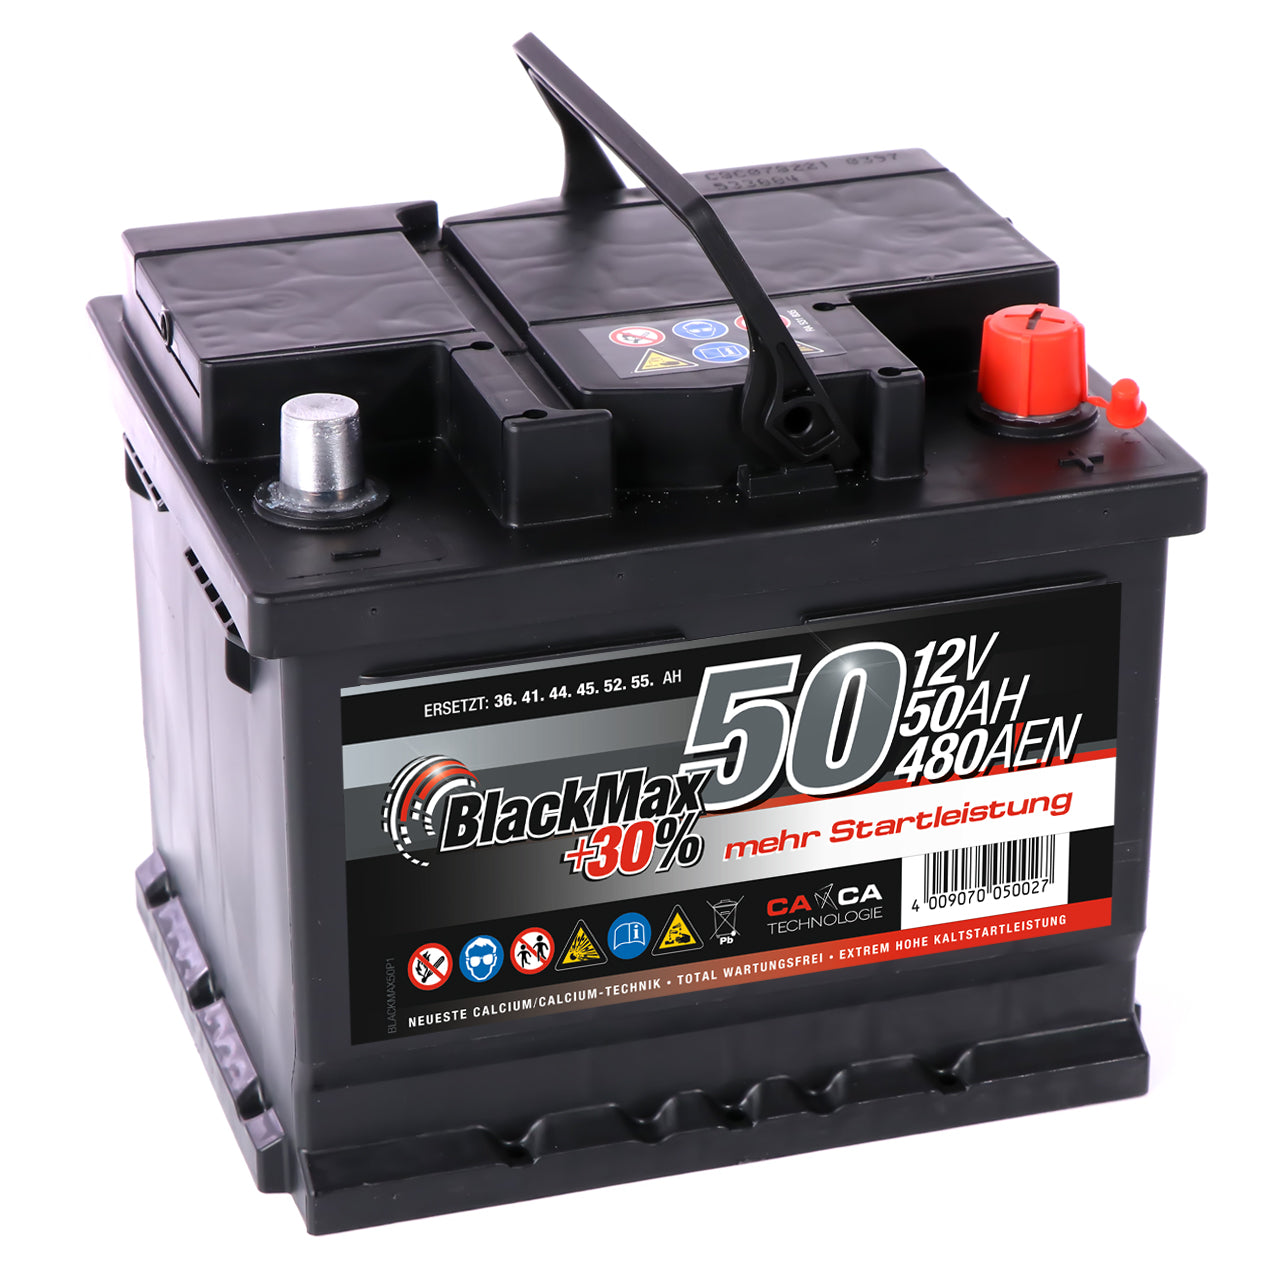 Autobatterie Speed L150-12V 50Ah 450A/EN - Starter 30% mehr